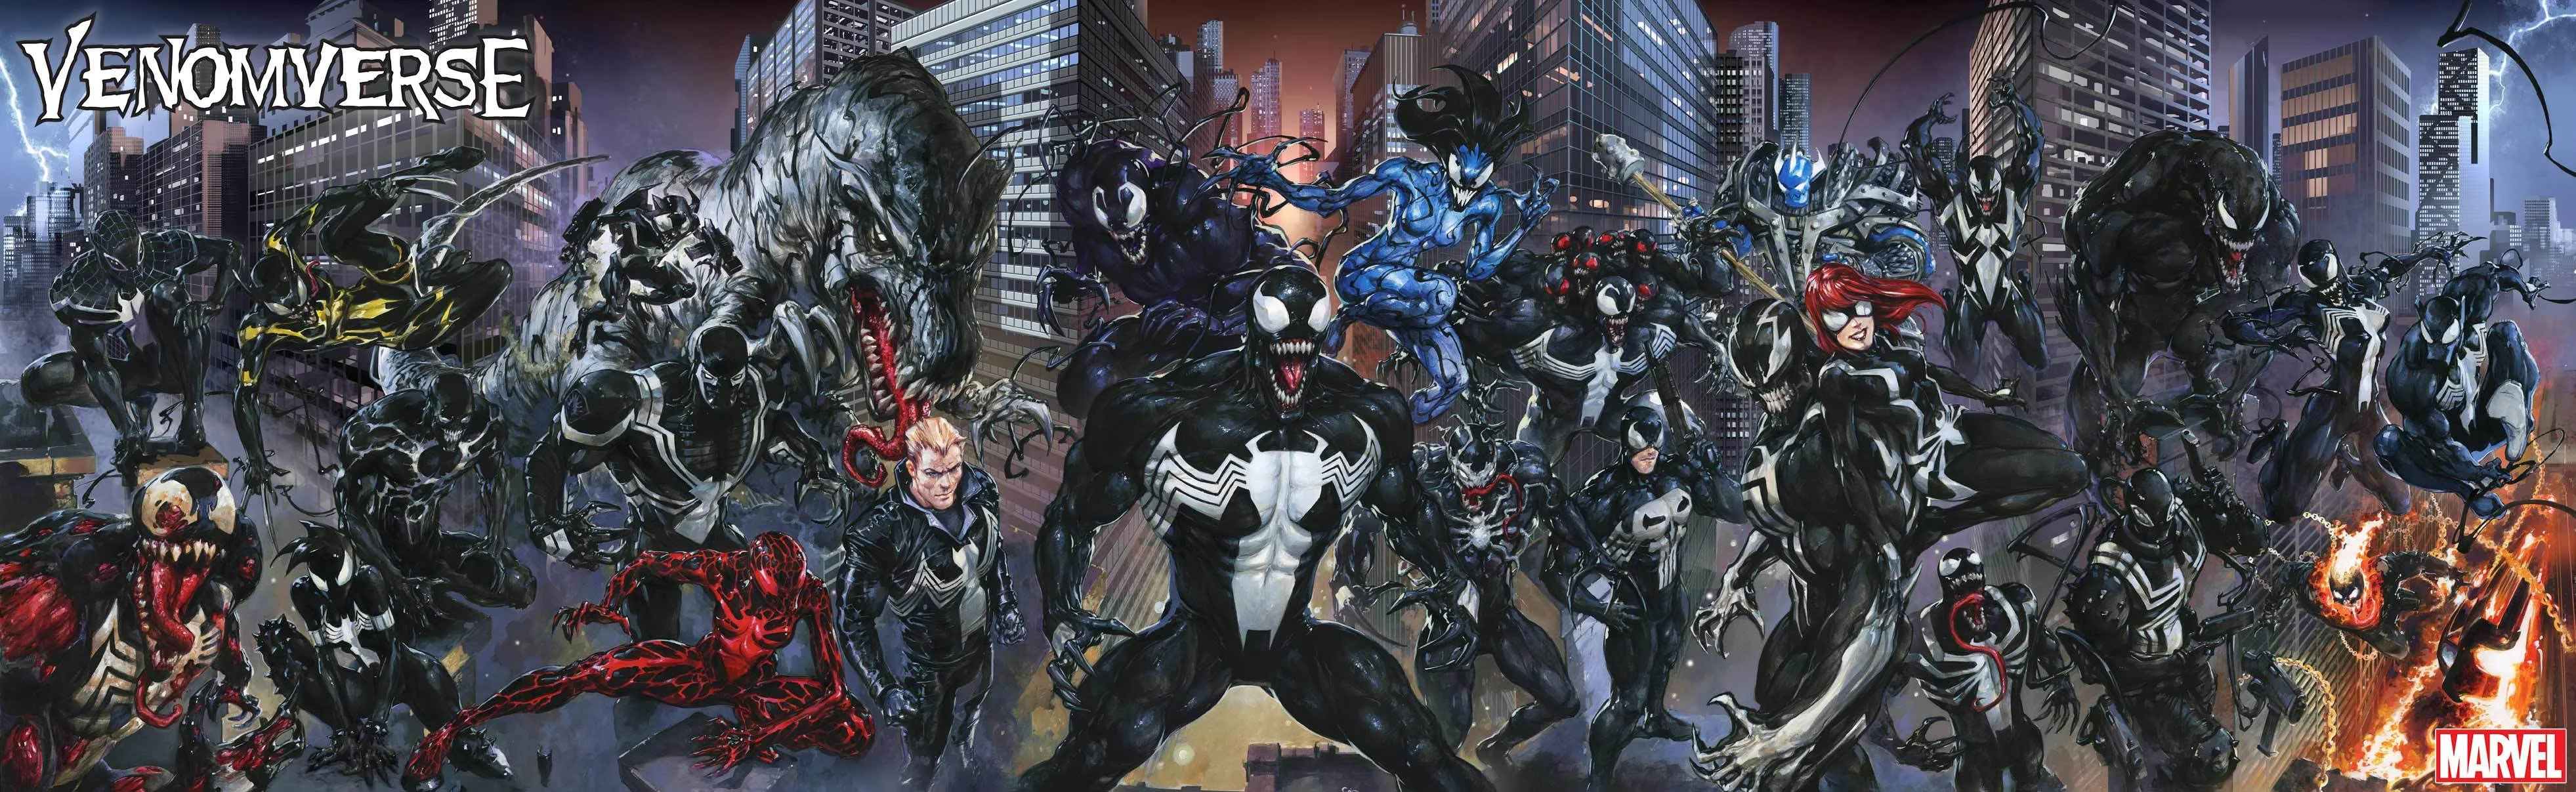 4 октября вышел последний номер комикса Venomverse — самого крупного события в жизни симбиота Венома, в котором он встретил других Веномов из параллельных вселенных. Комикс вышел очень странным, и в этой статье мы попытаемся разобраться, почему.